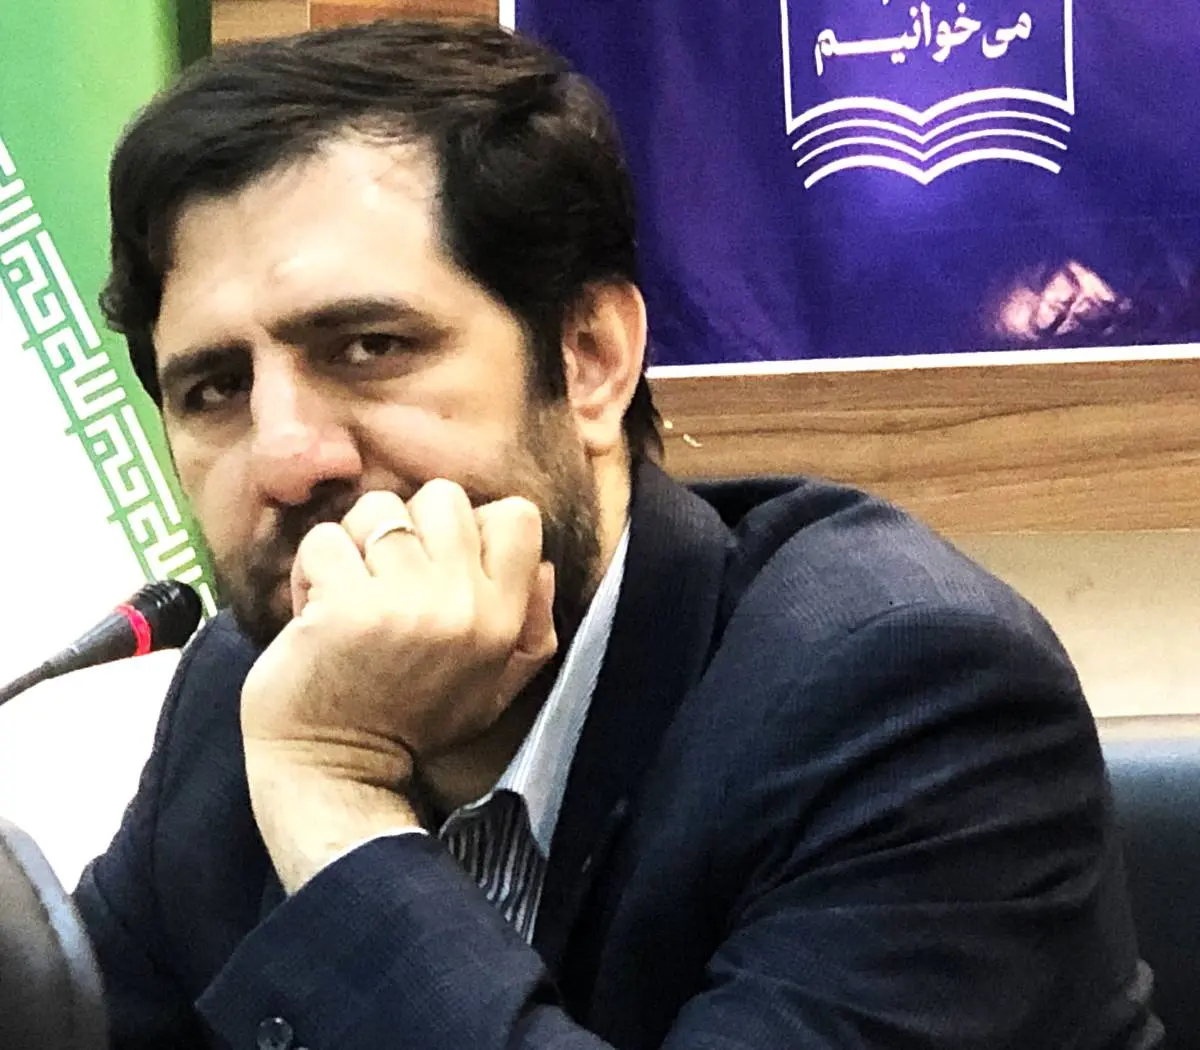 برگزاری هفته بزرگداشت سعدی در شیراز و تهران 